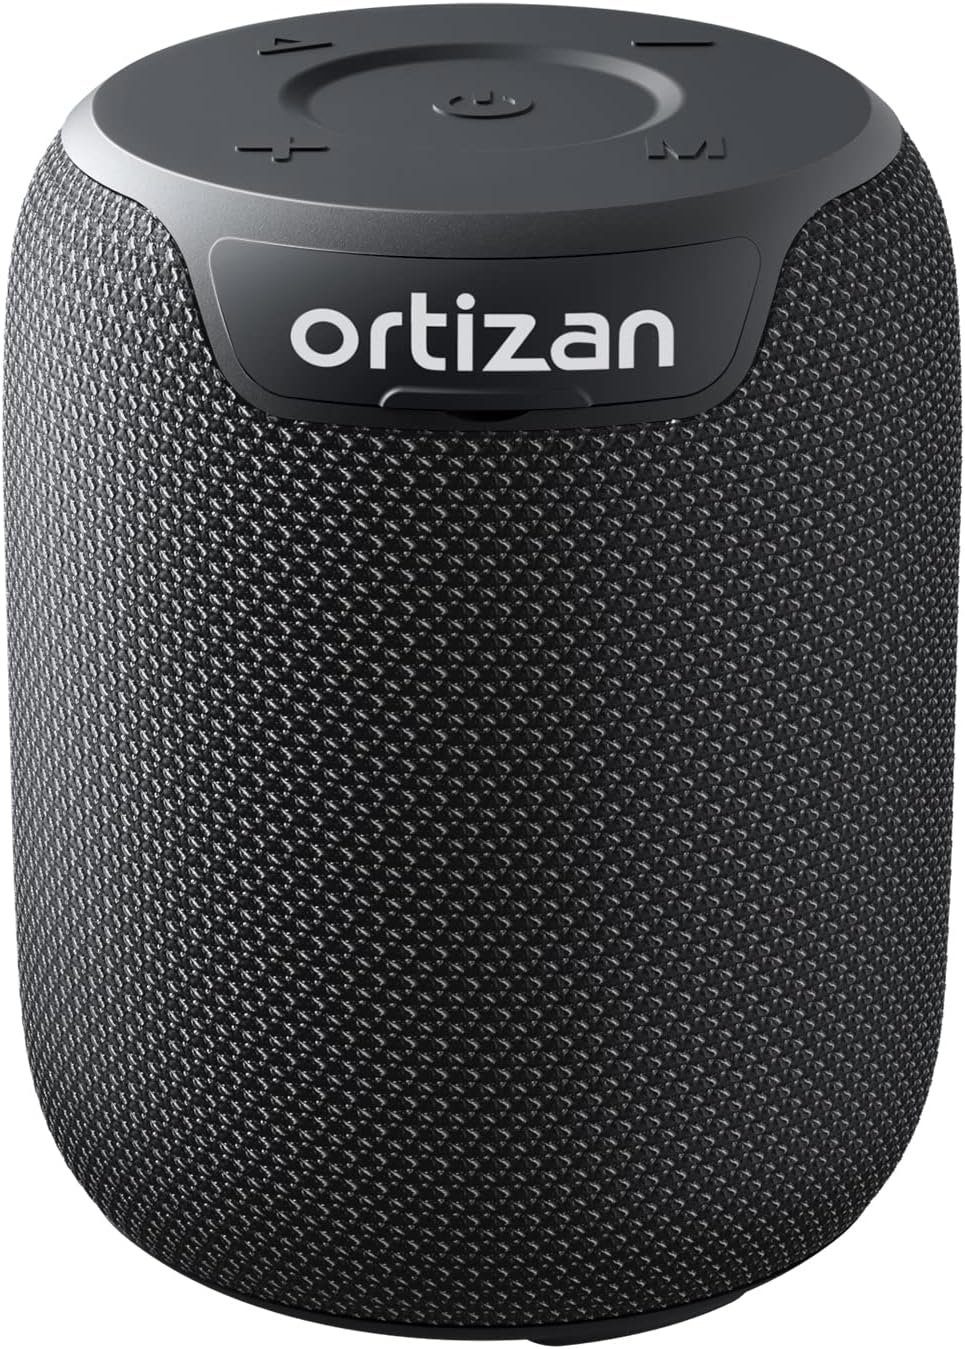 Stereo IPX7 Ortizan (Bluetooth, Bluetooth mit Wasserdicht, Bass W, Minuten 1000 Akku) Intensiver Lautsprecher 5.3, 15